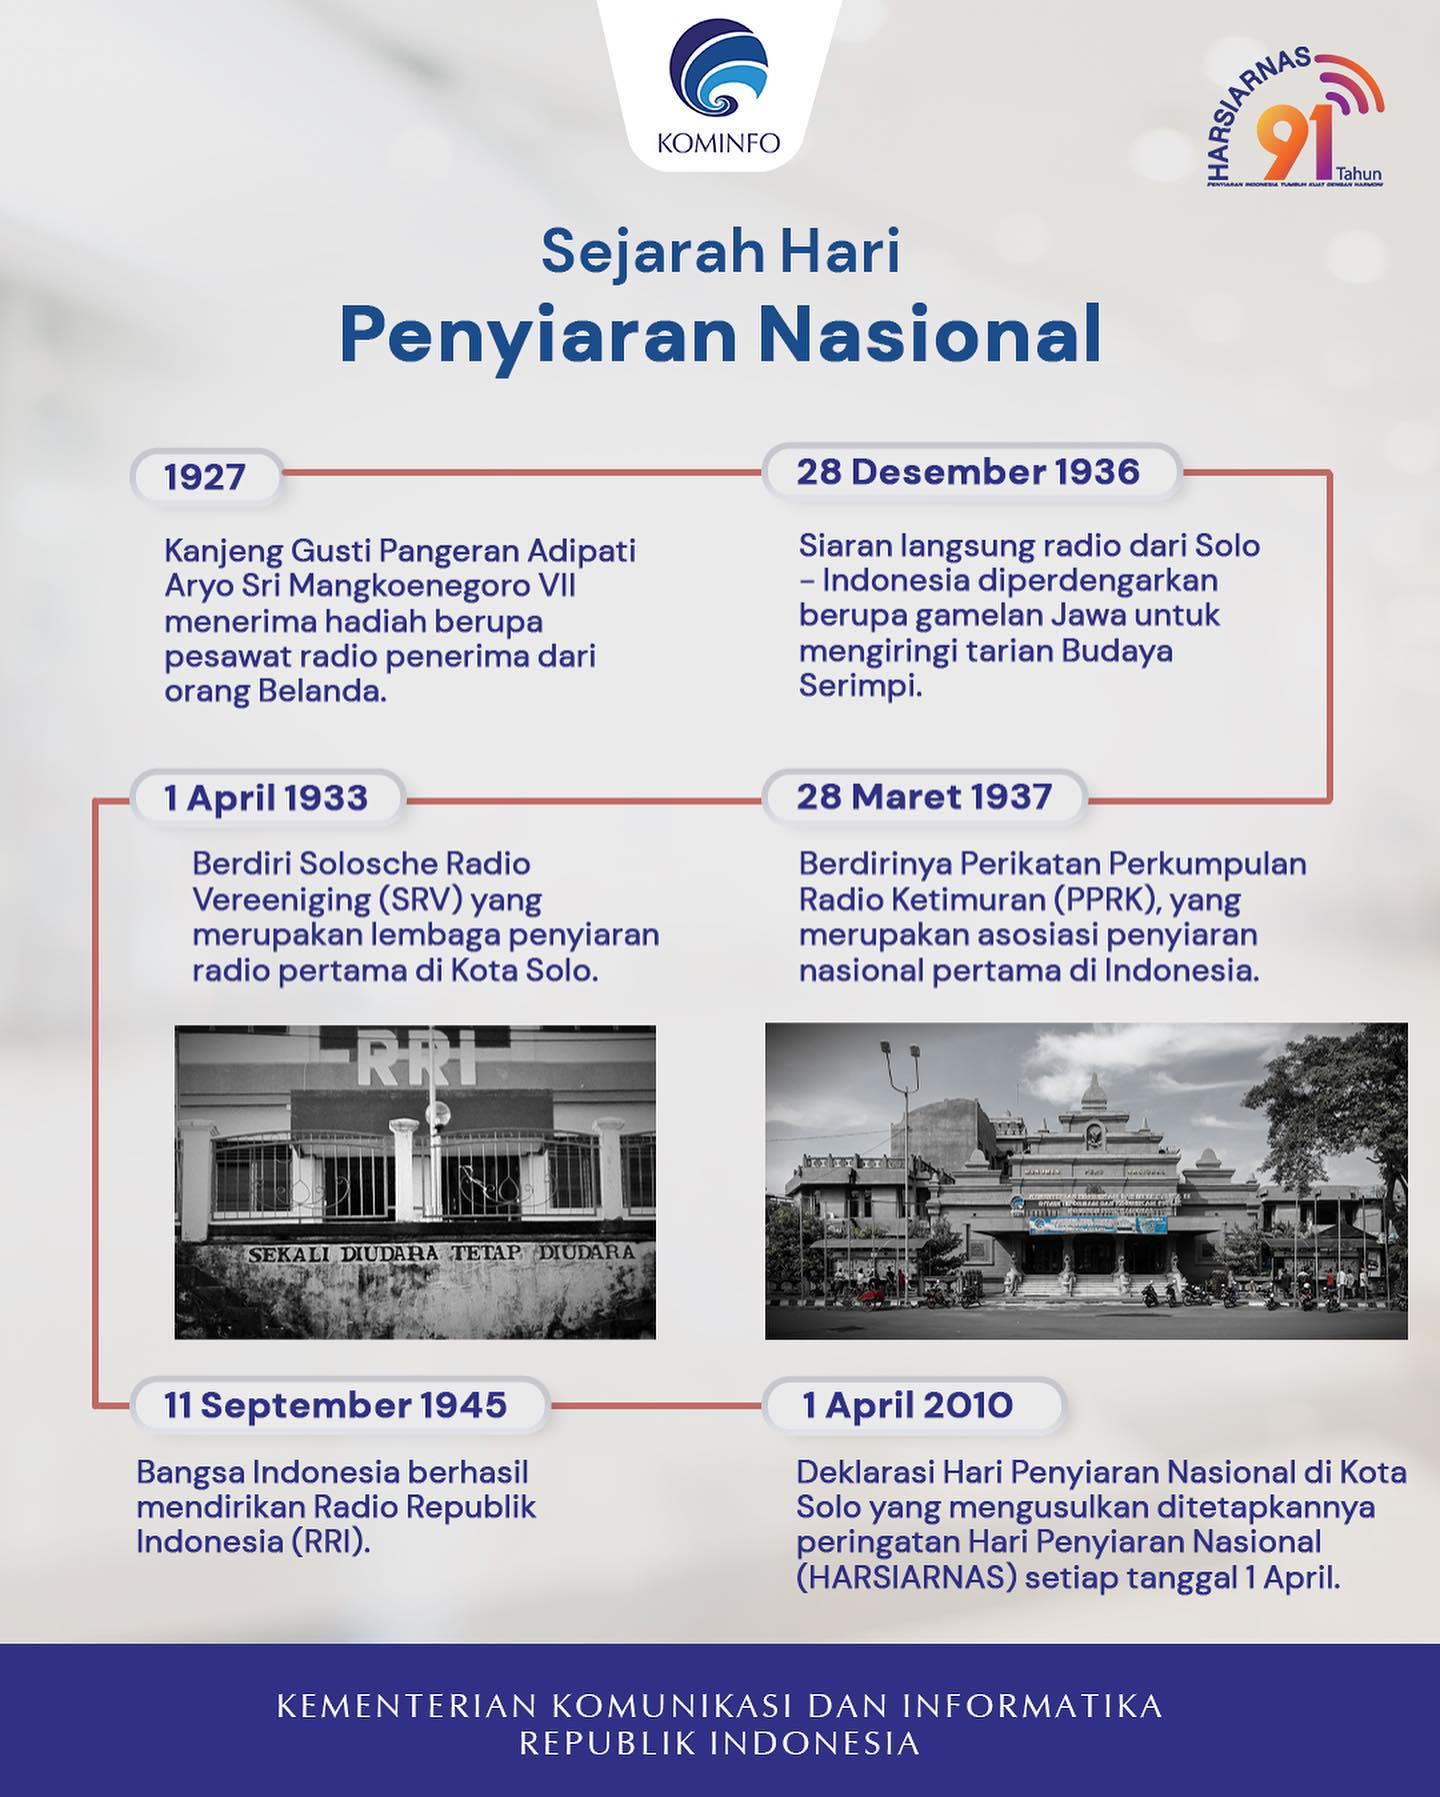 Sejarah Hari Penyiaran Nasional